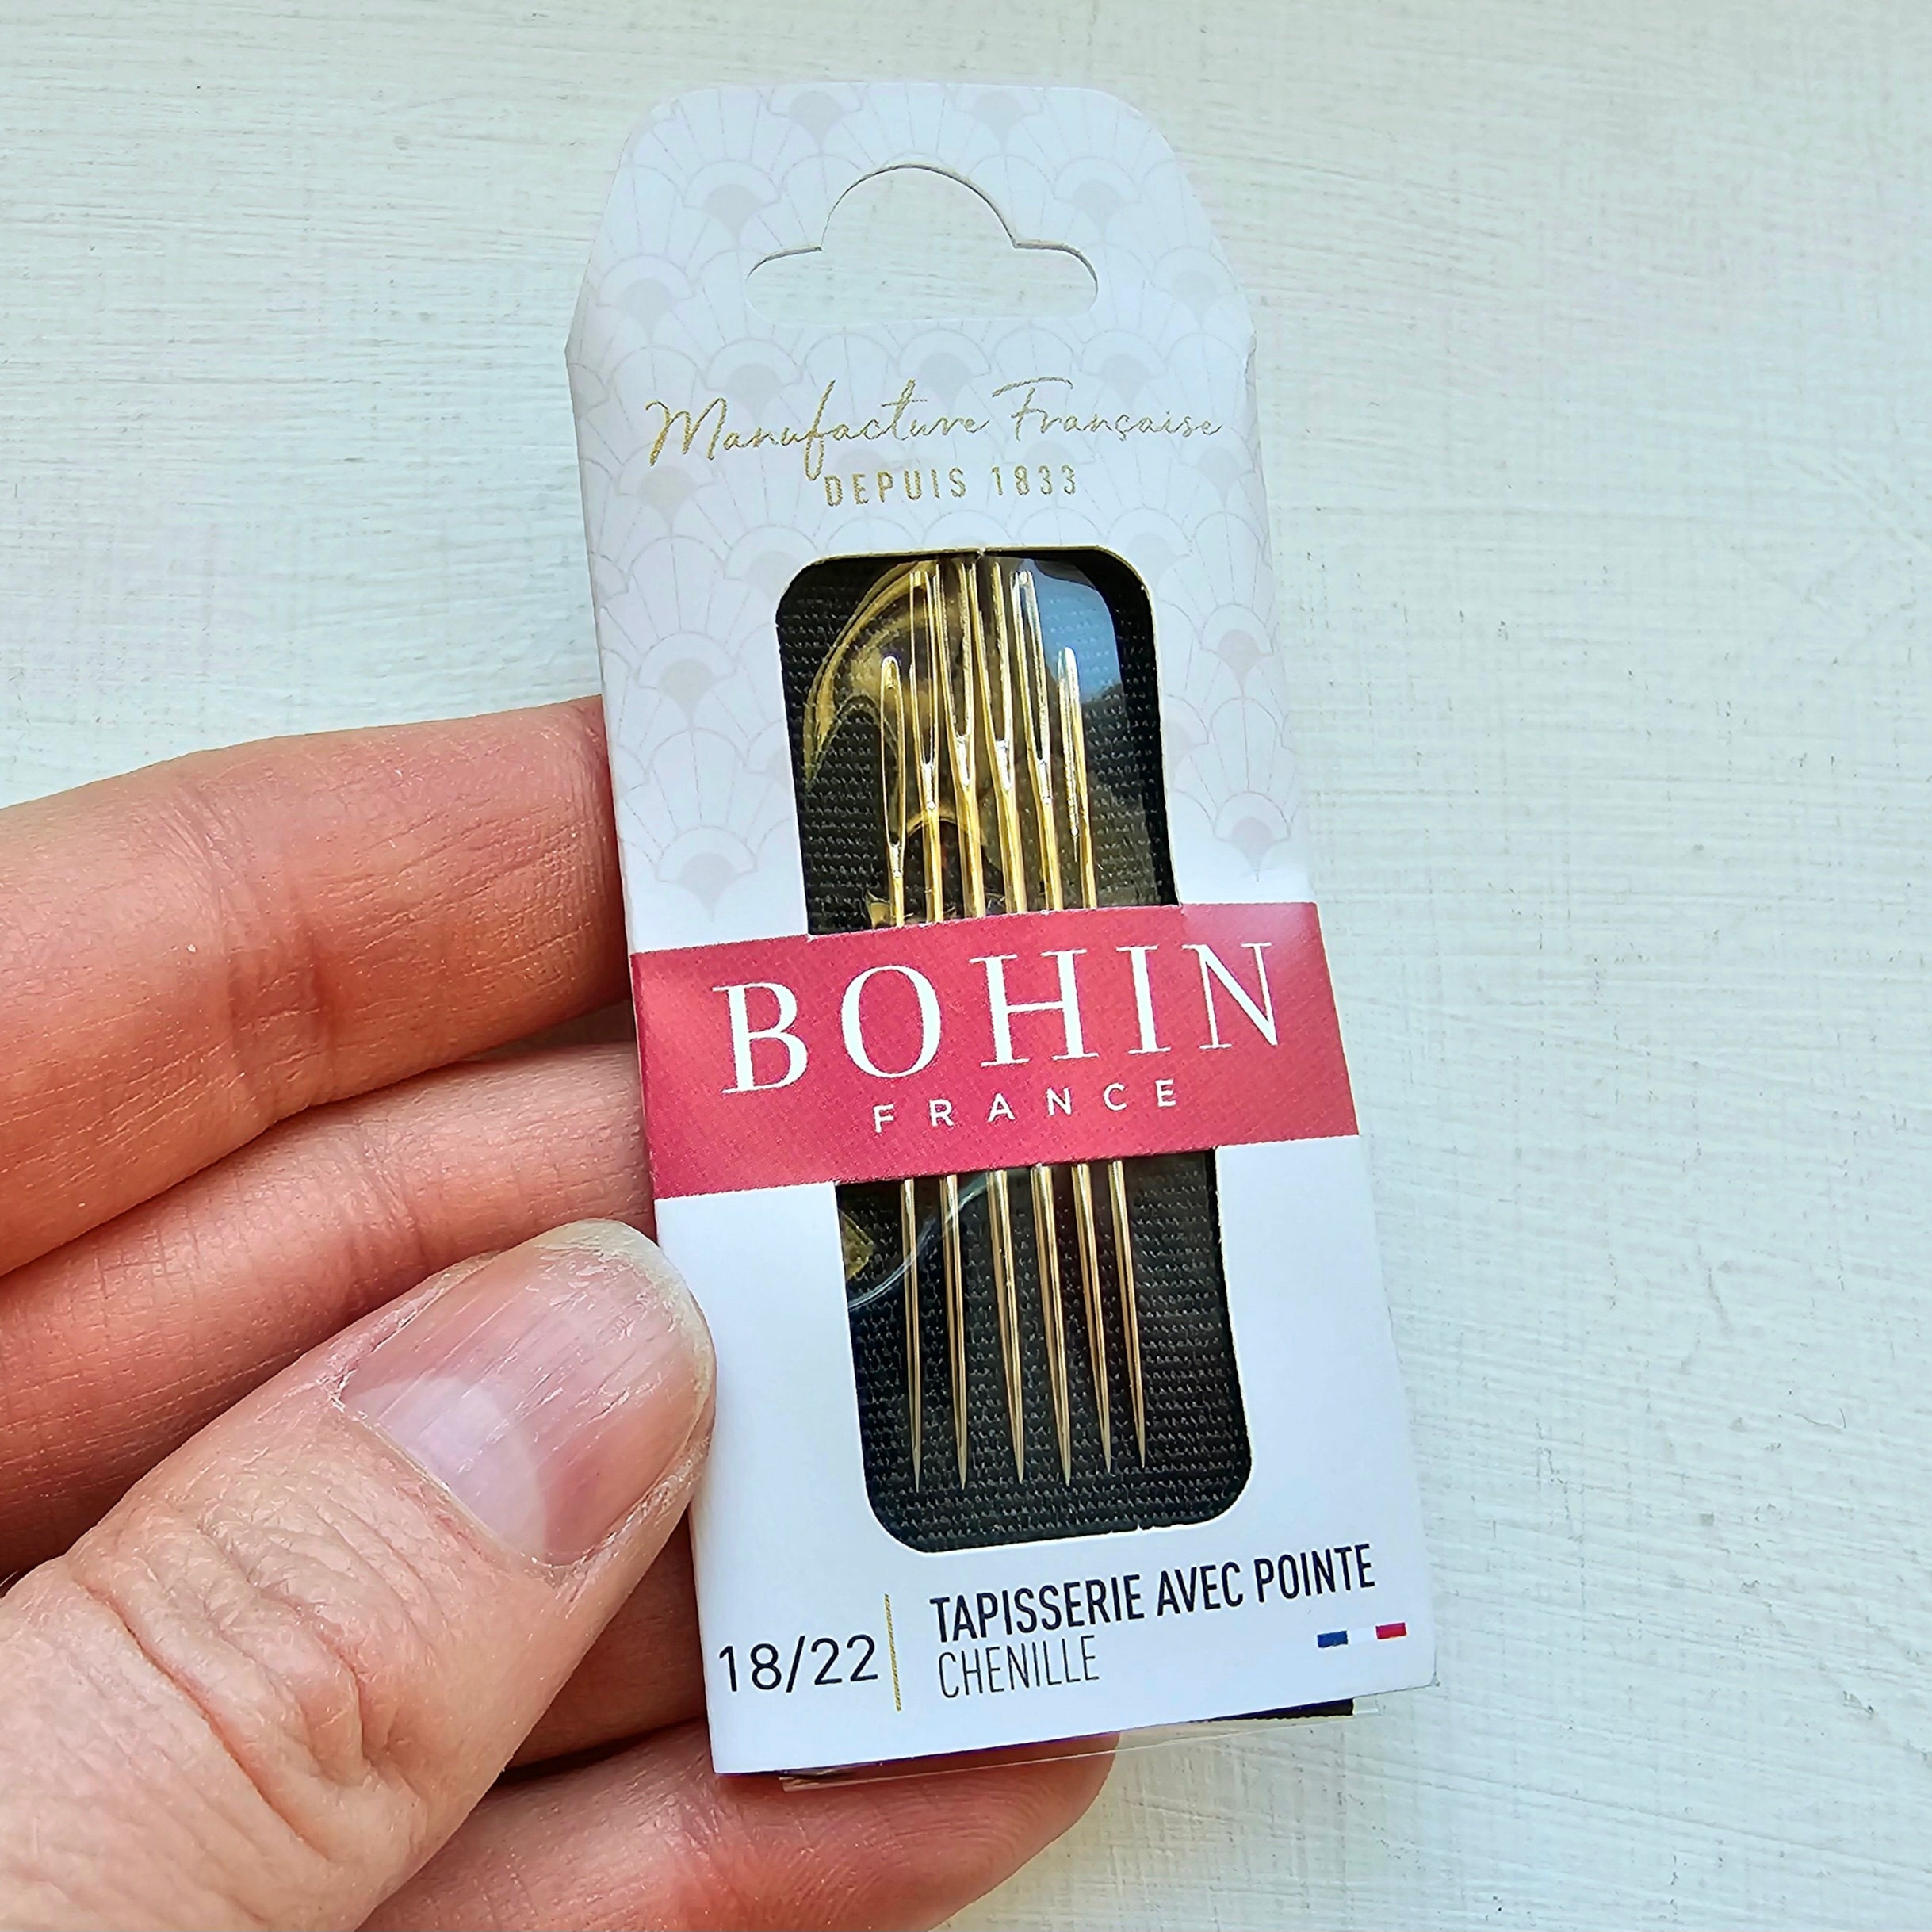 Bohin Chenille Needles - Needlepoint Joint